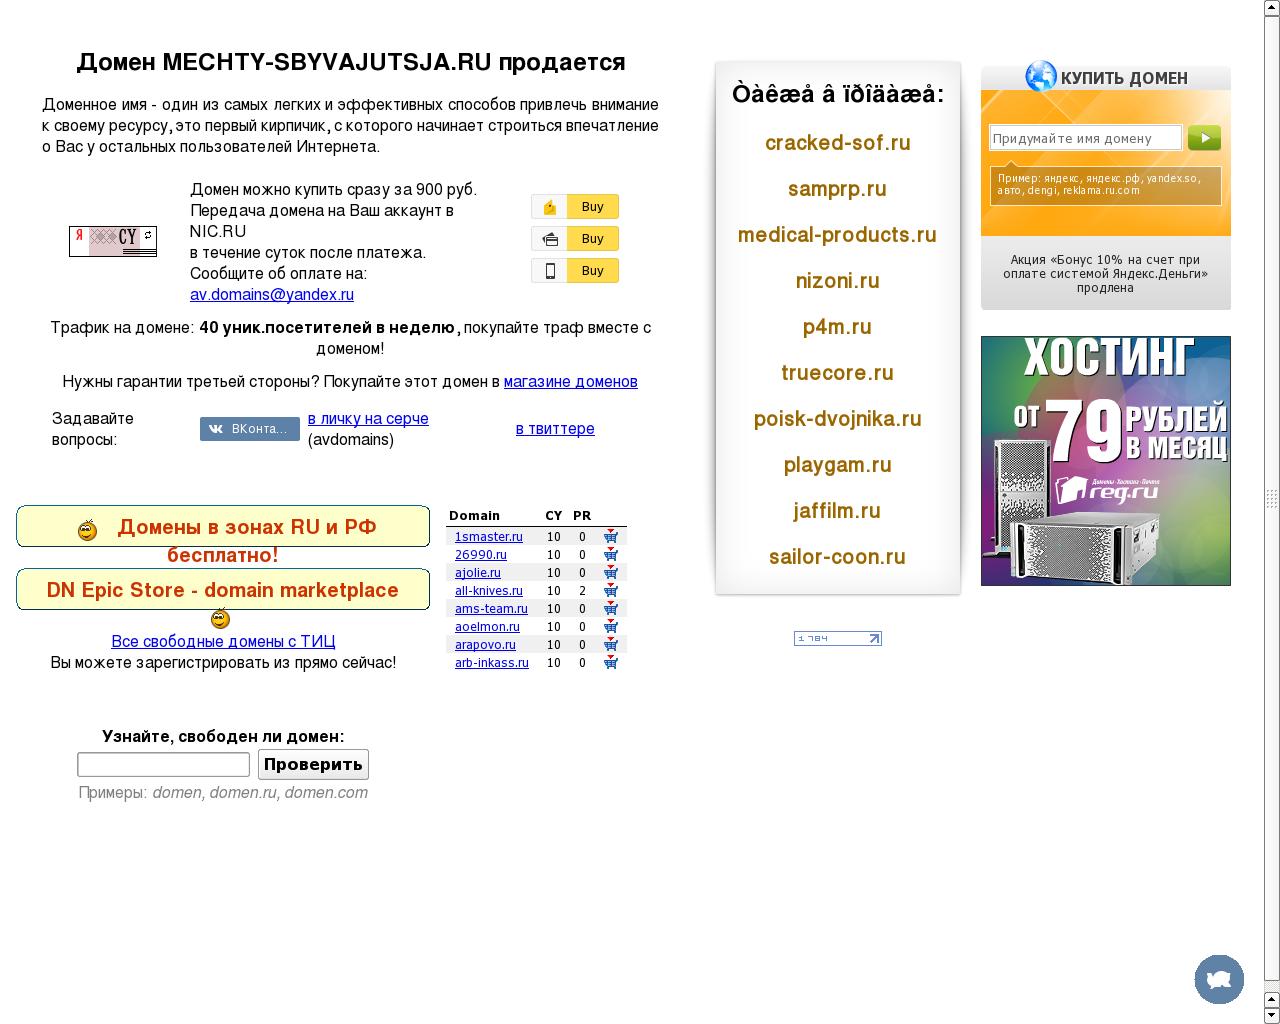 Изображение сайта mechty-sbyvajutsja.ru в разрешении 1280x1024